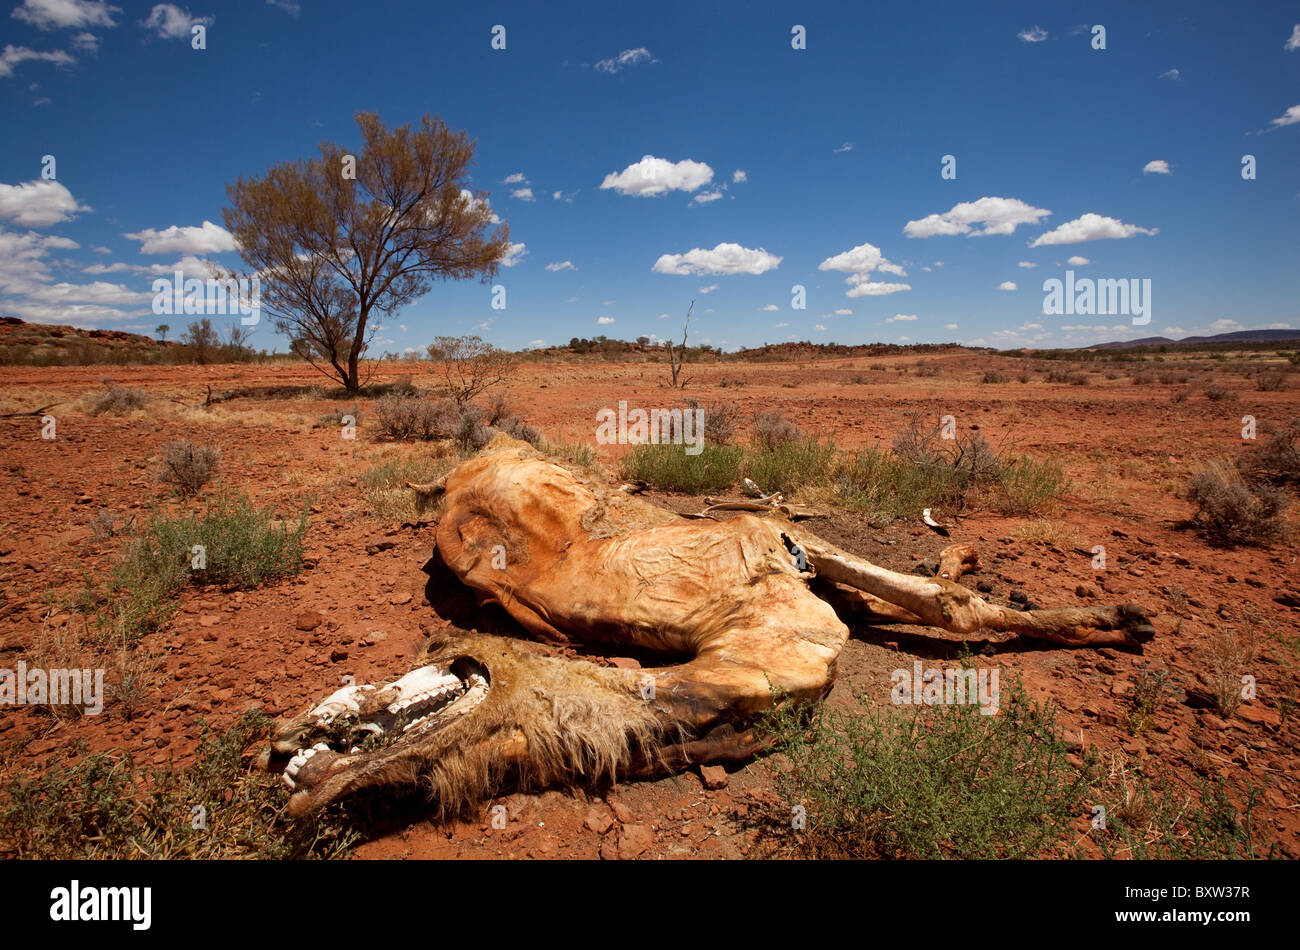 L'Australie, Territoire du Nord, le désert de l'outback camel en morts Banque D'Images